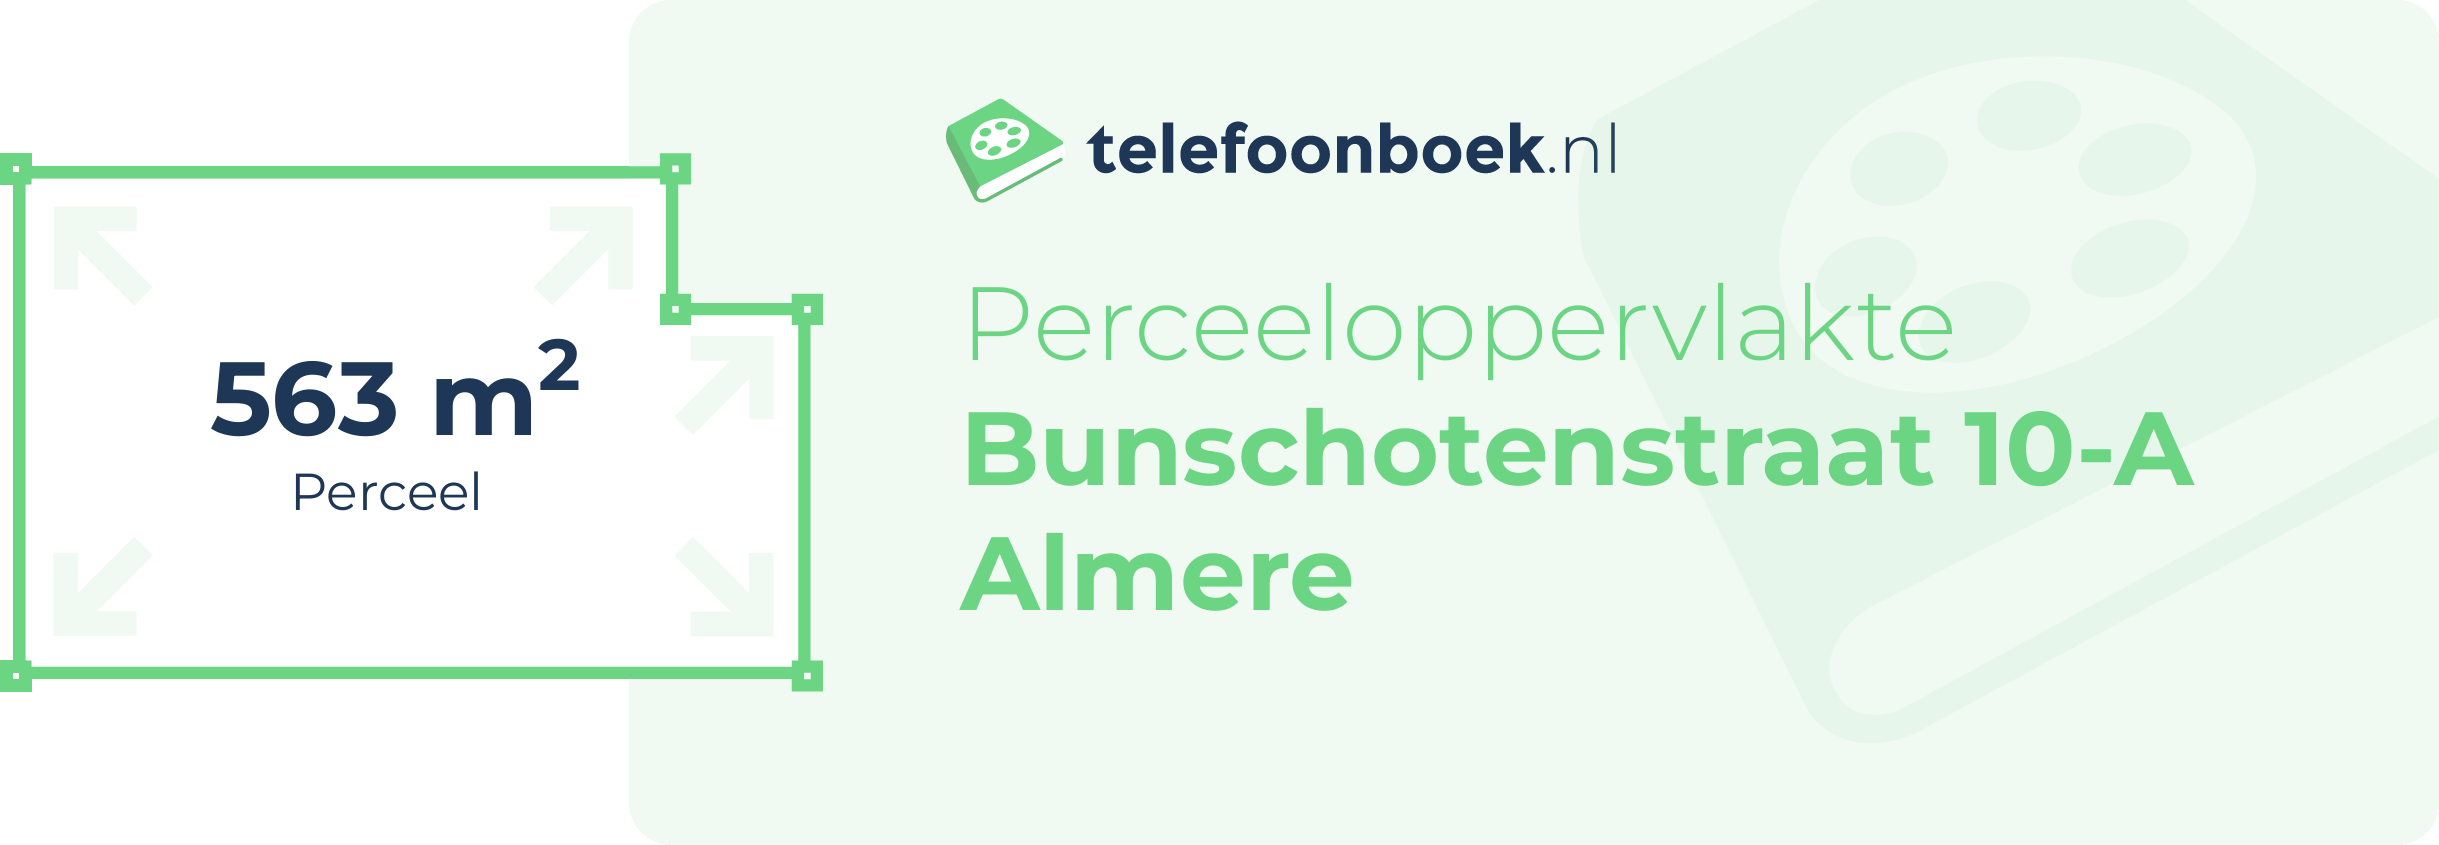 Perceeloppervlakte Bunschotenstraat 10-A Almere